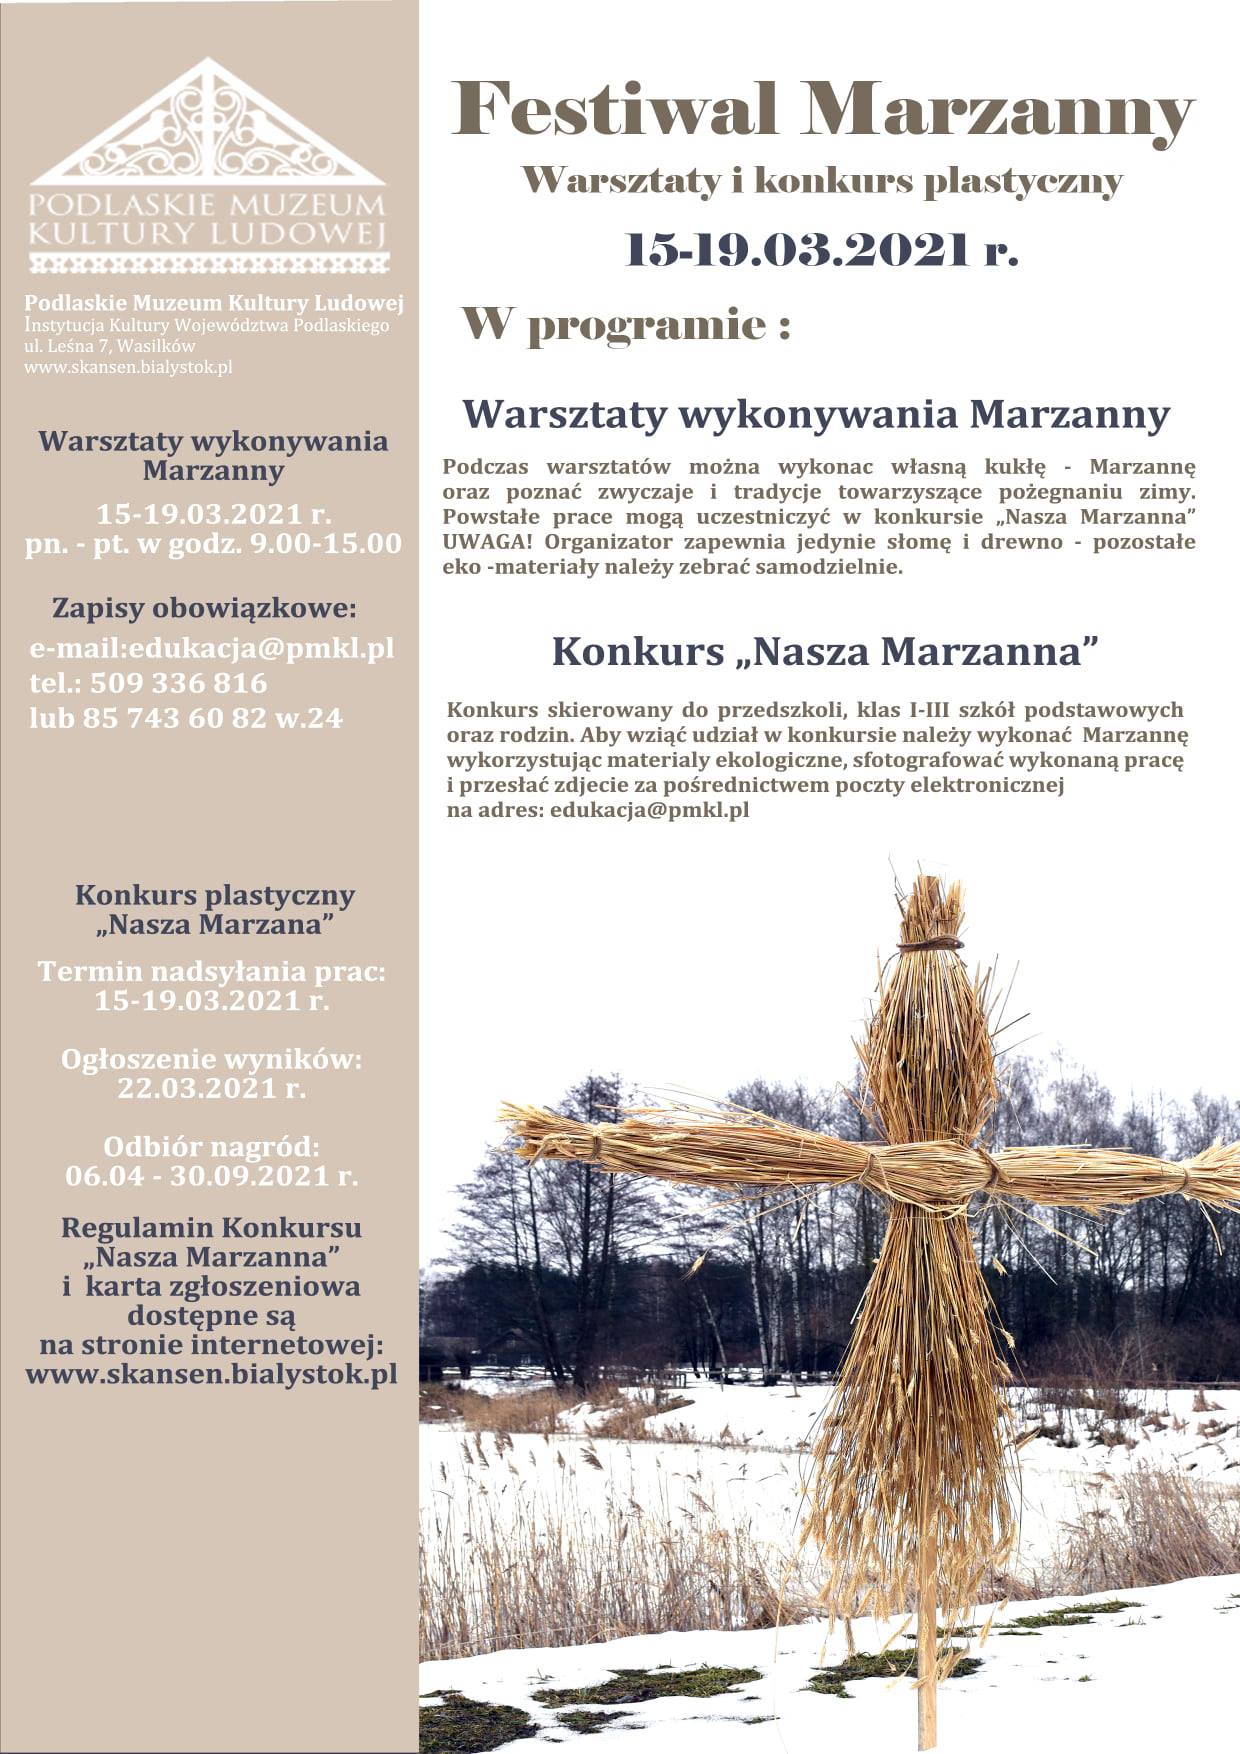 Plakat informujący o warsztatach i konkursie dotyczącym Festiwalu Marzanny